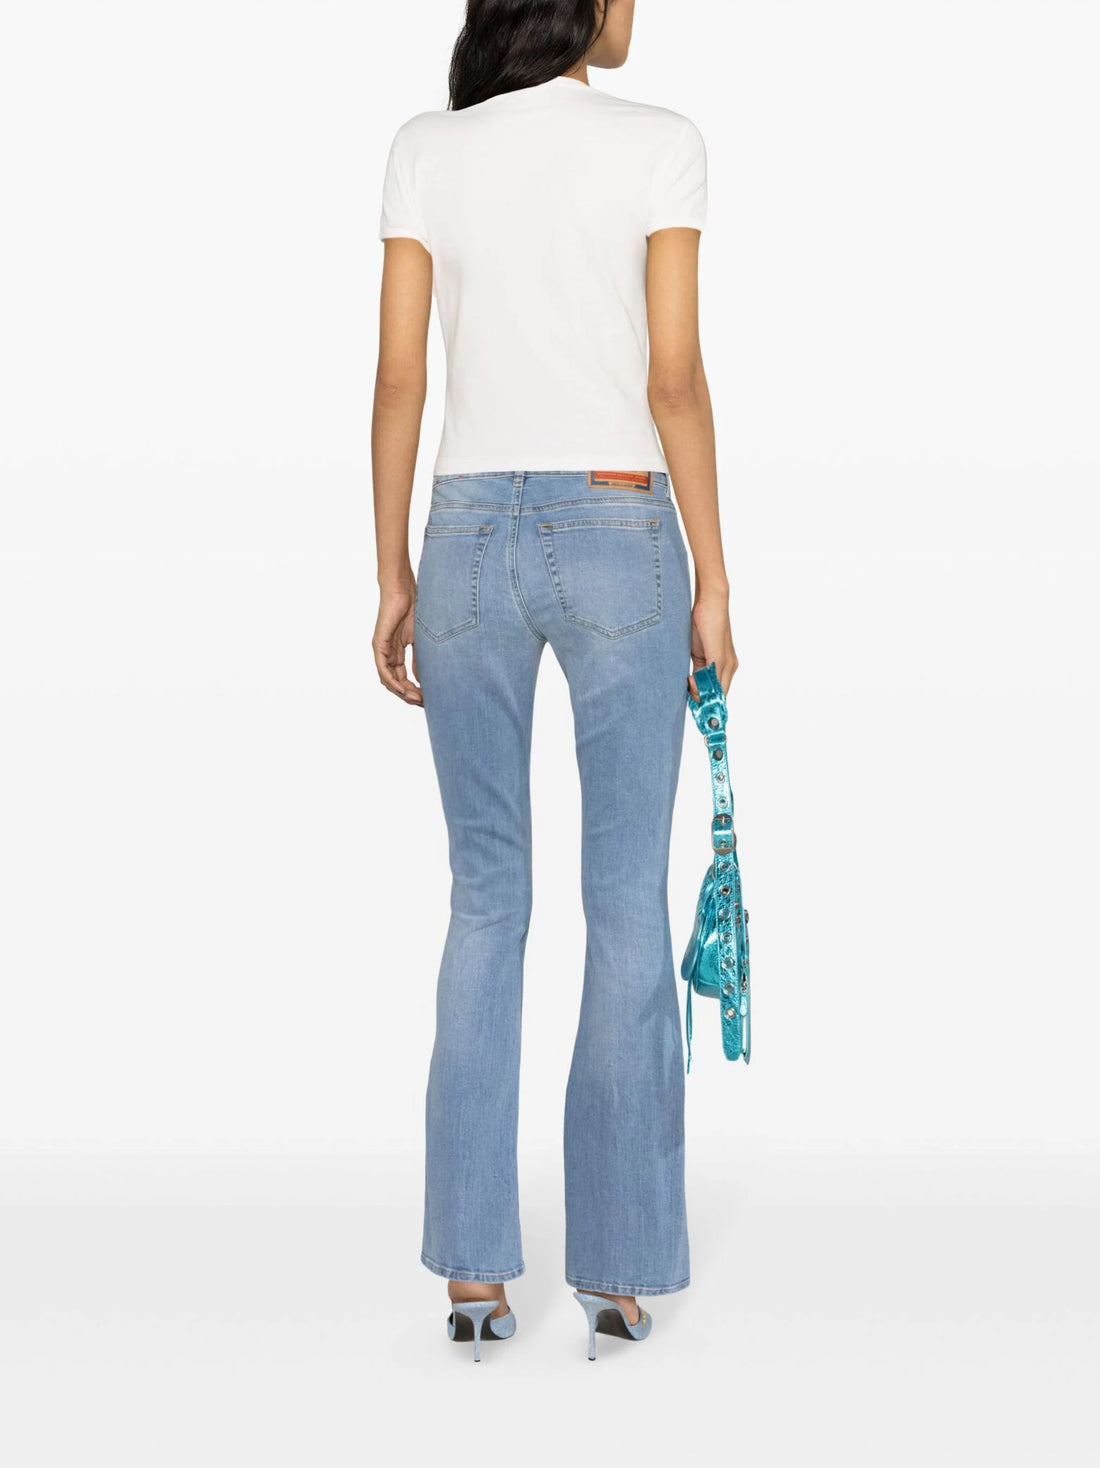 DIESEL WOMEN 1969 D-Ebbey Low-rise Slim-fit Bootcut Jeans Light Blue - MAISONDEFASHION.COM